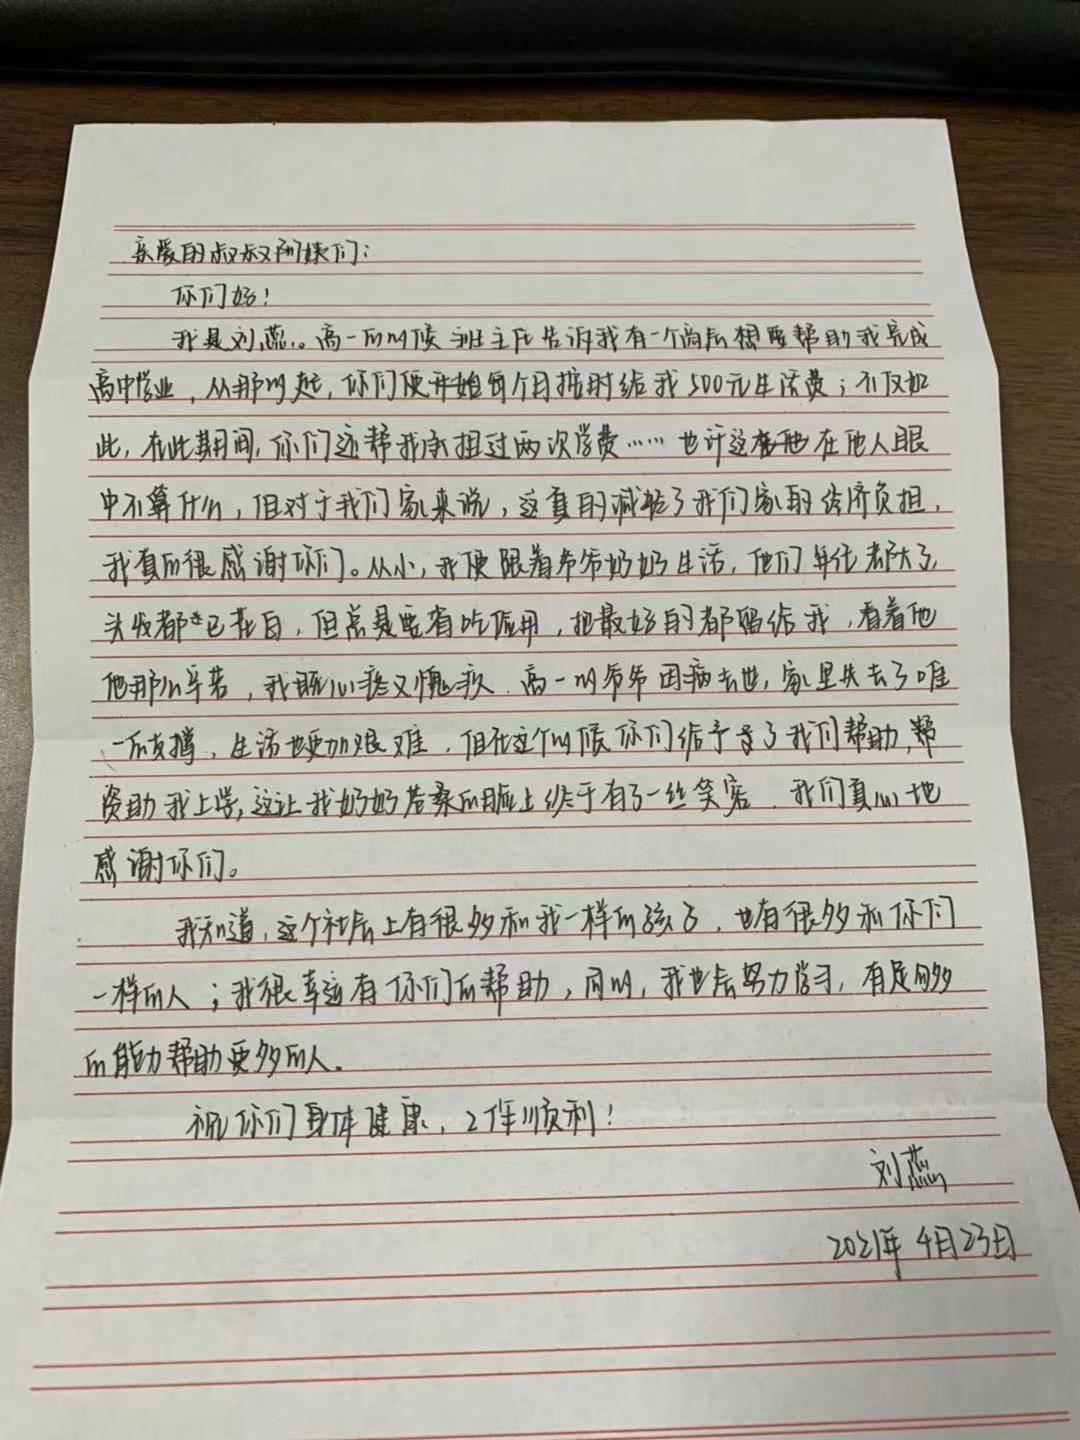 这是一封来自徐州市扬州商会一直帮扶的高中贫困生刘蕊的感谢信!